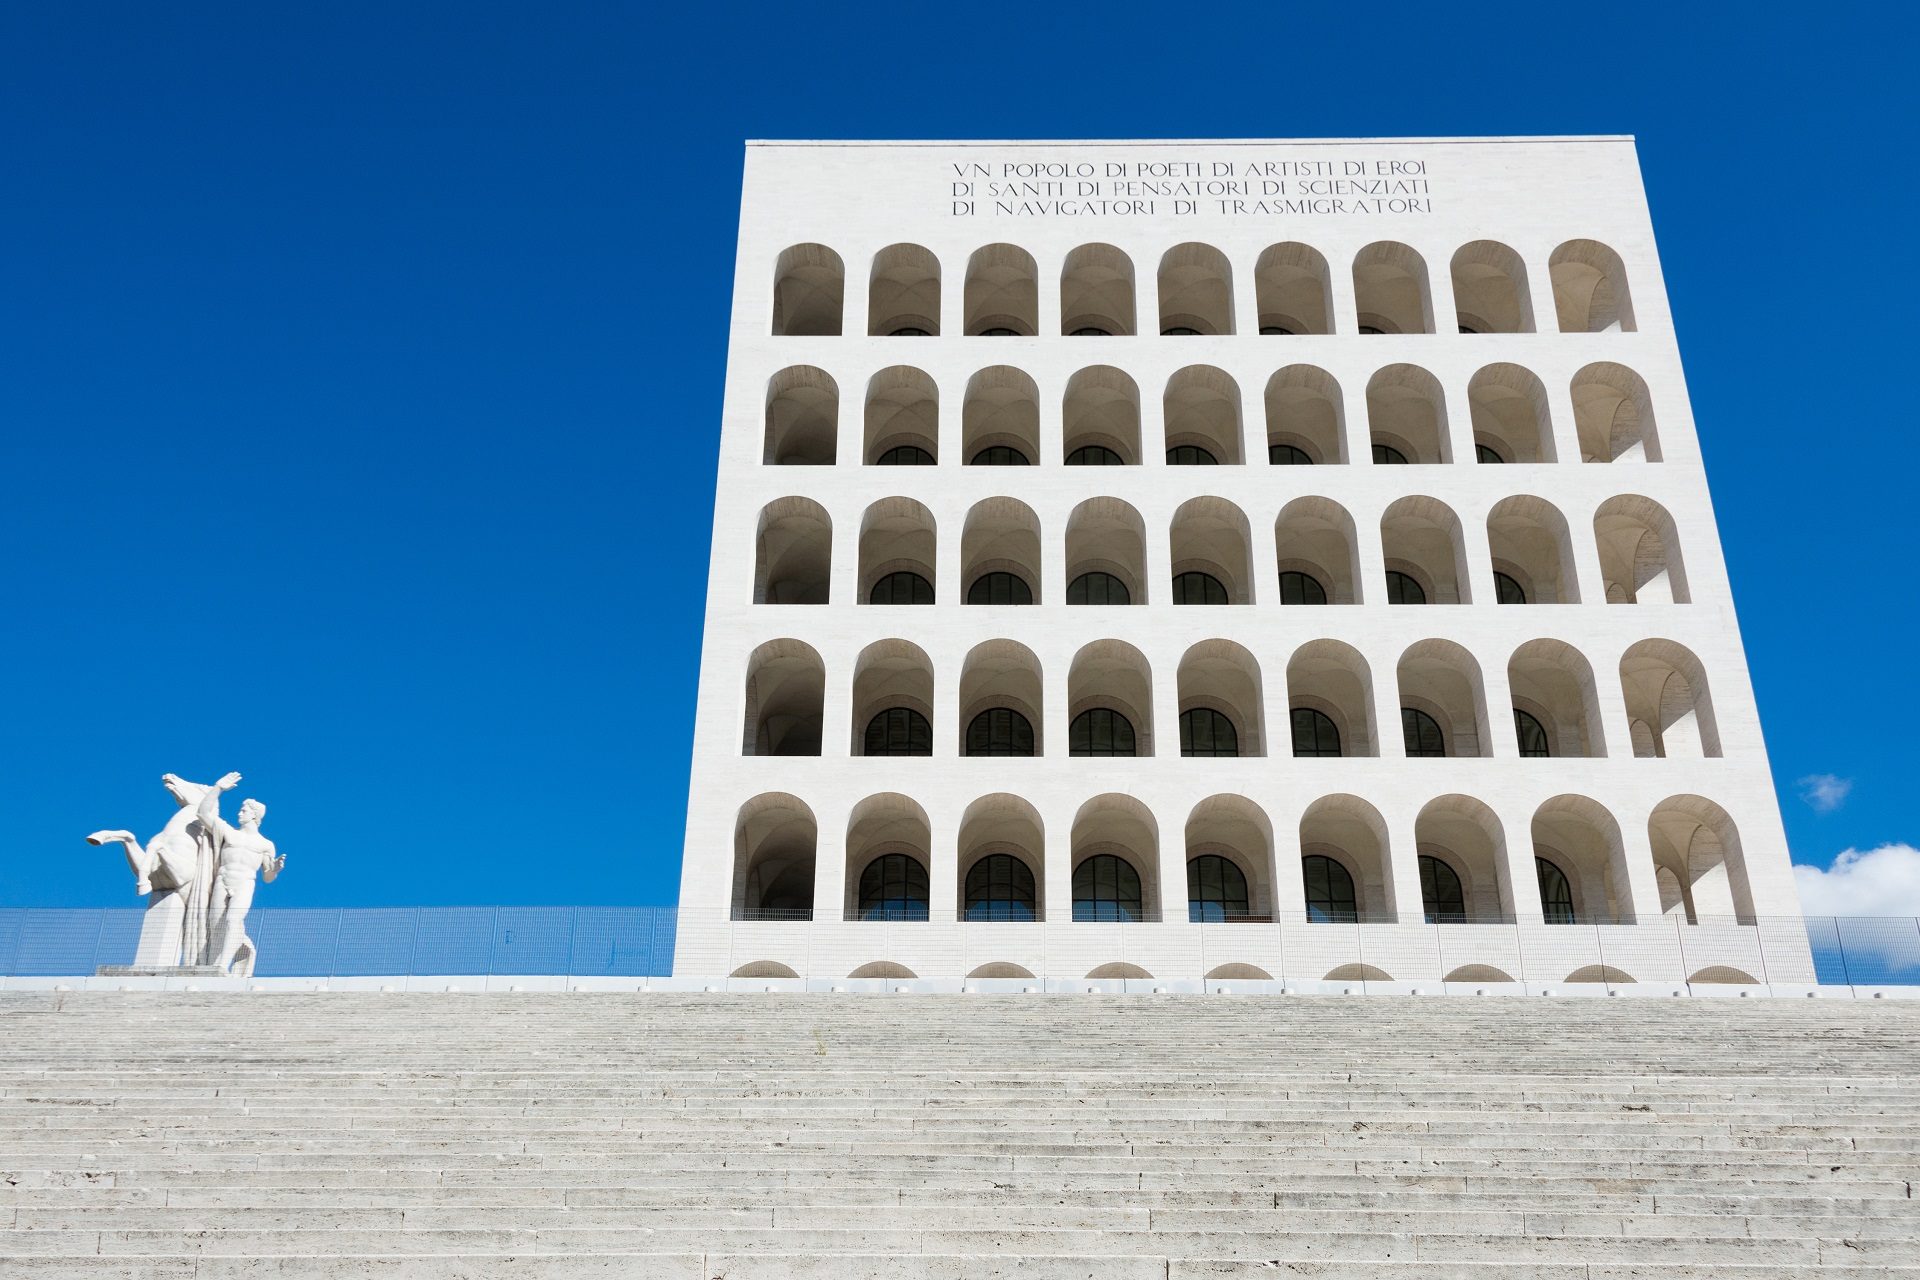 Kwadratowe Koloseum czyli budowla z białego marmuru w dzielnicy eur w Rzymie